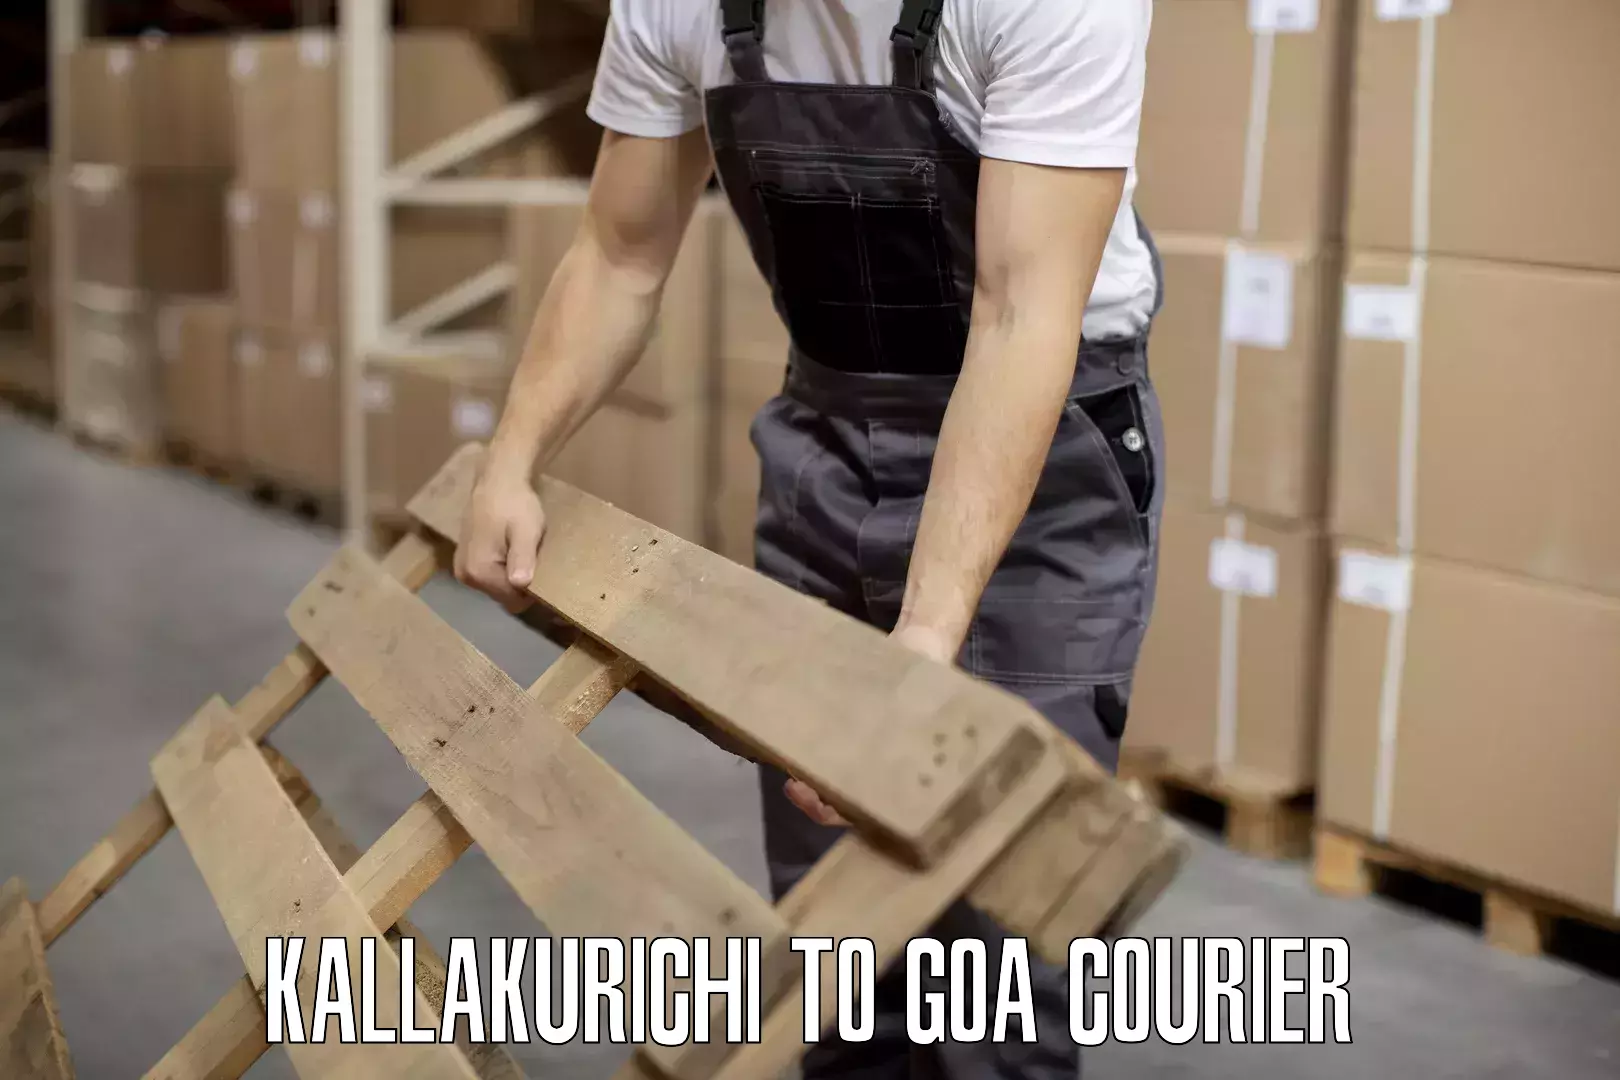 Personal effects shipping Kallakurichi to NIT Goa